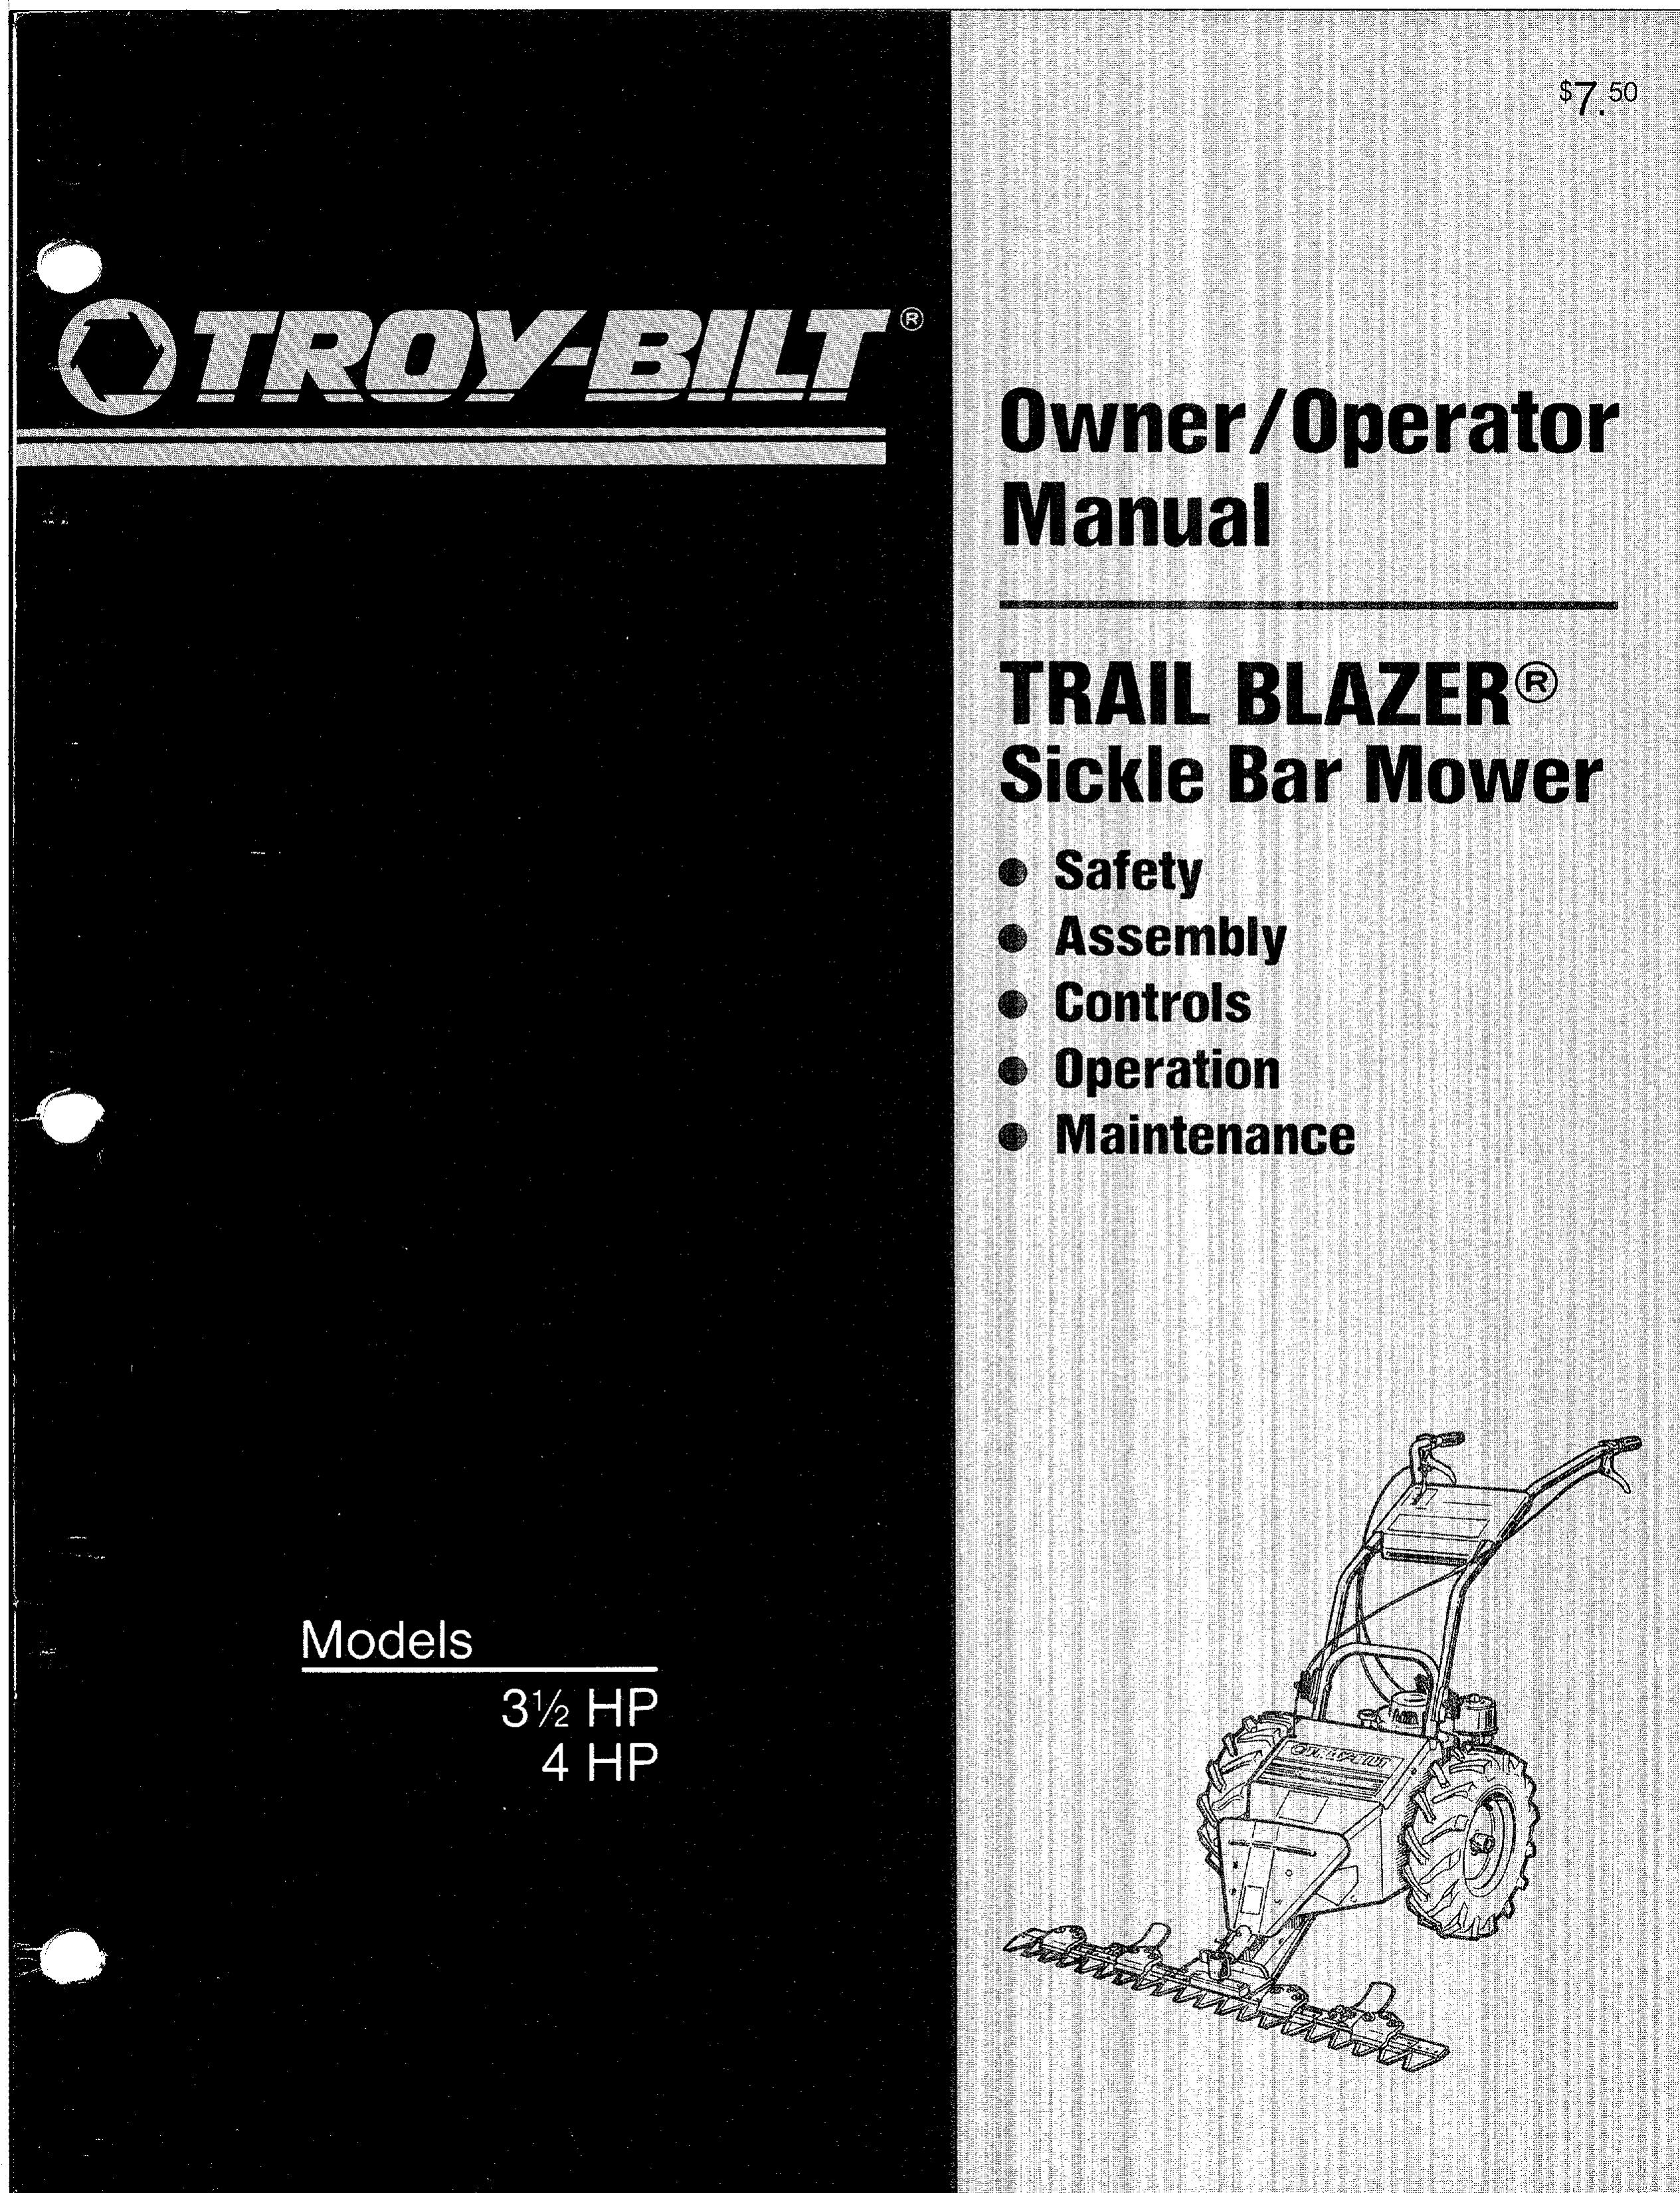 Troy-Bilt 31/2 HP Lawn Mower User Manual